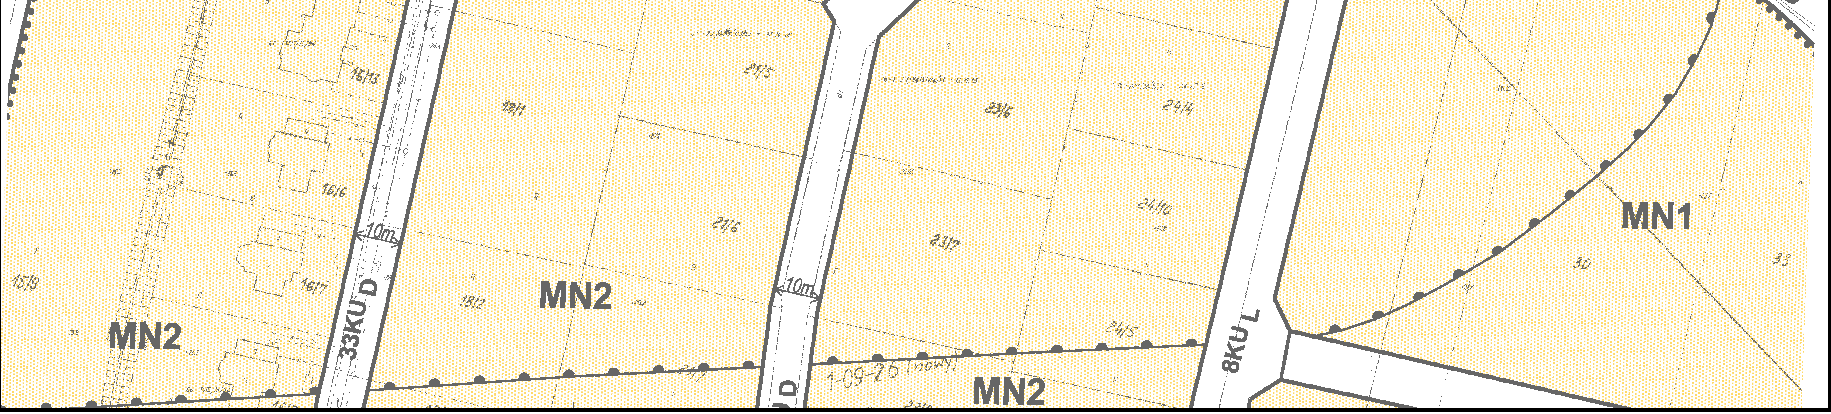 tereny komunikacji szynowej (KK), gdzie dopuszcza się wyłącznie dotychczasowy sposób uŝytkowania; tereny ulic dojazdowych (KU D), zabudowa mieszkaniowa jednorodzinna (MN2); maksymalna wysokość 10,5 m.